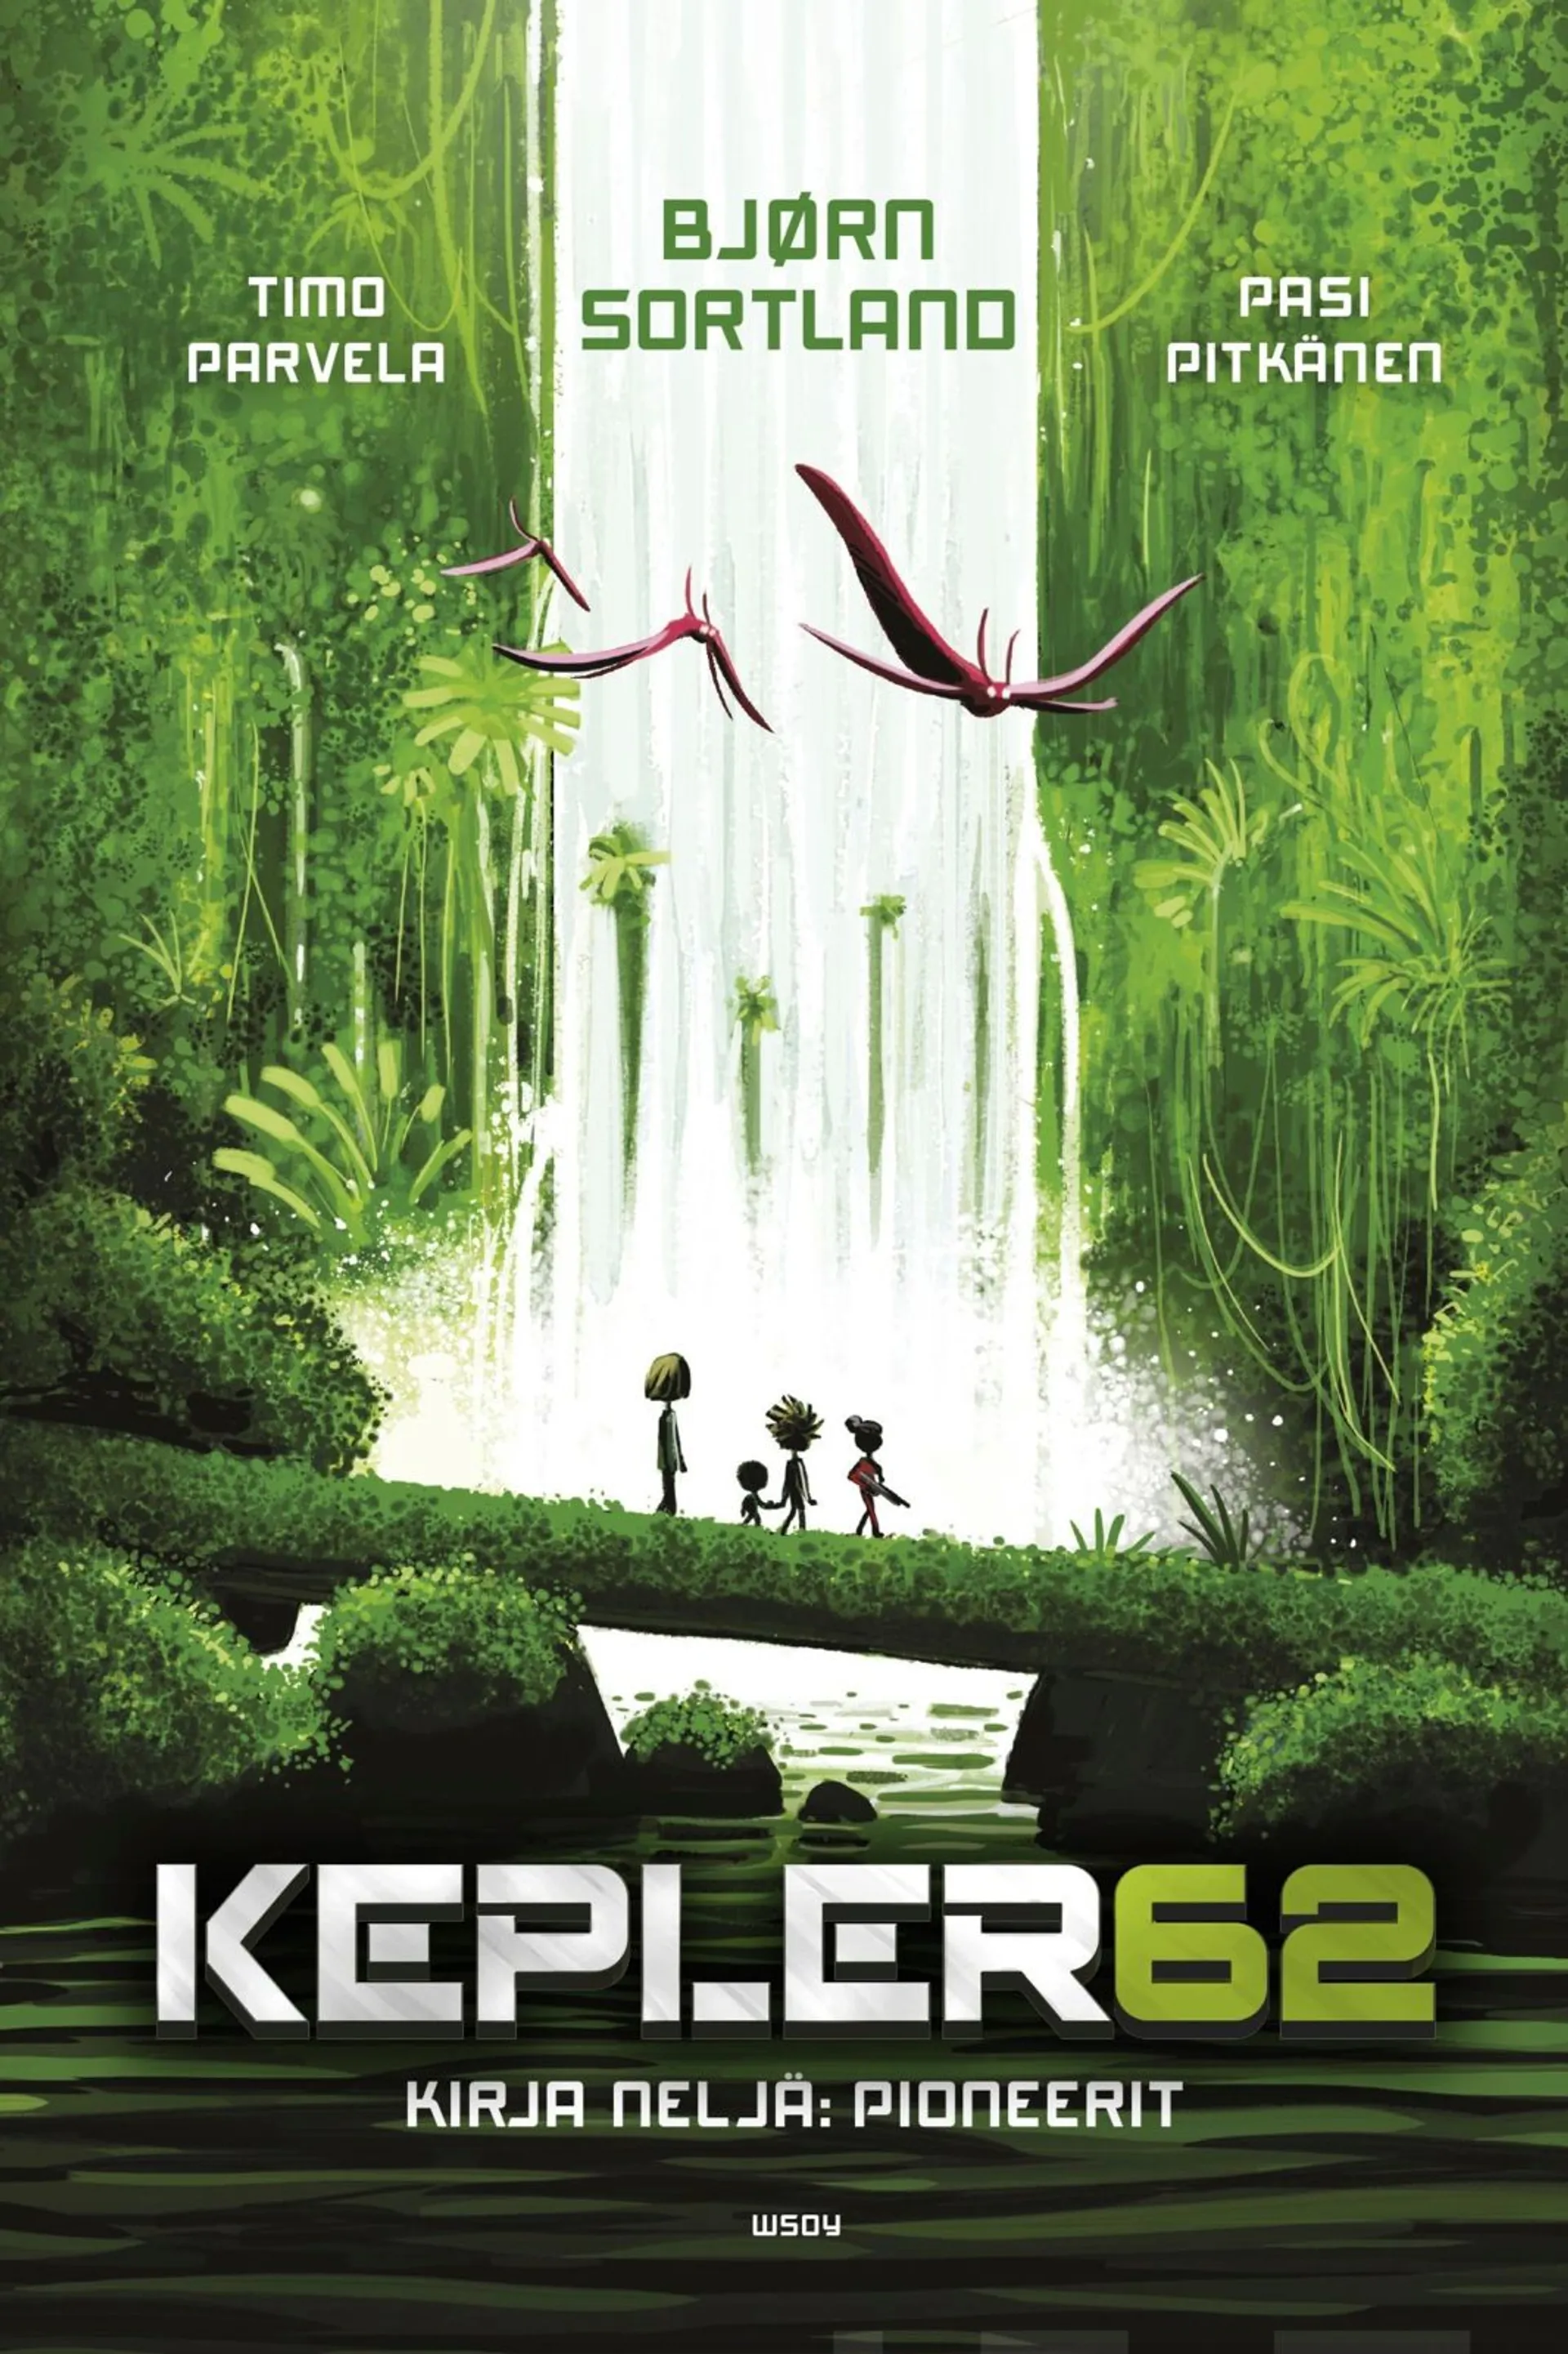 Sortland, Kepler62 Kirja neljä: Pioneerit